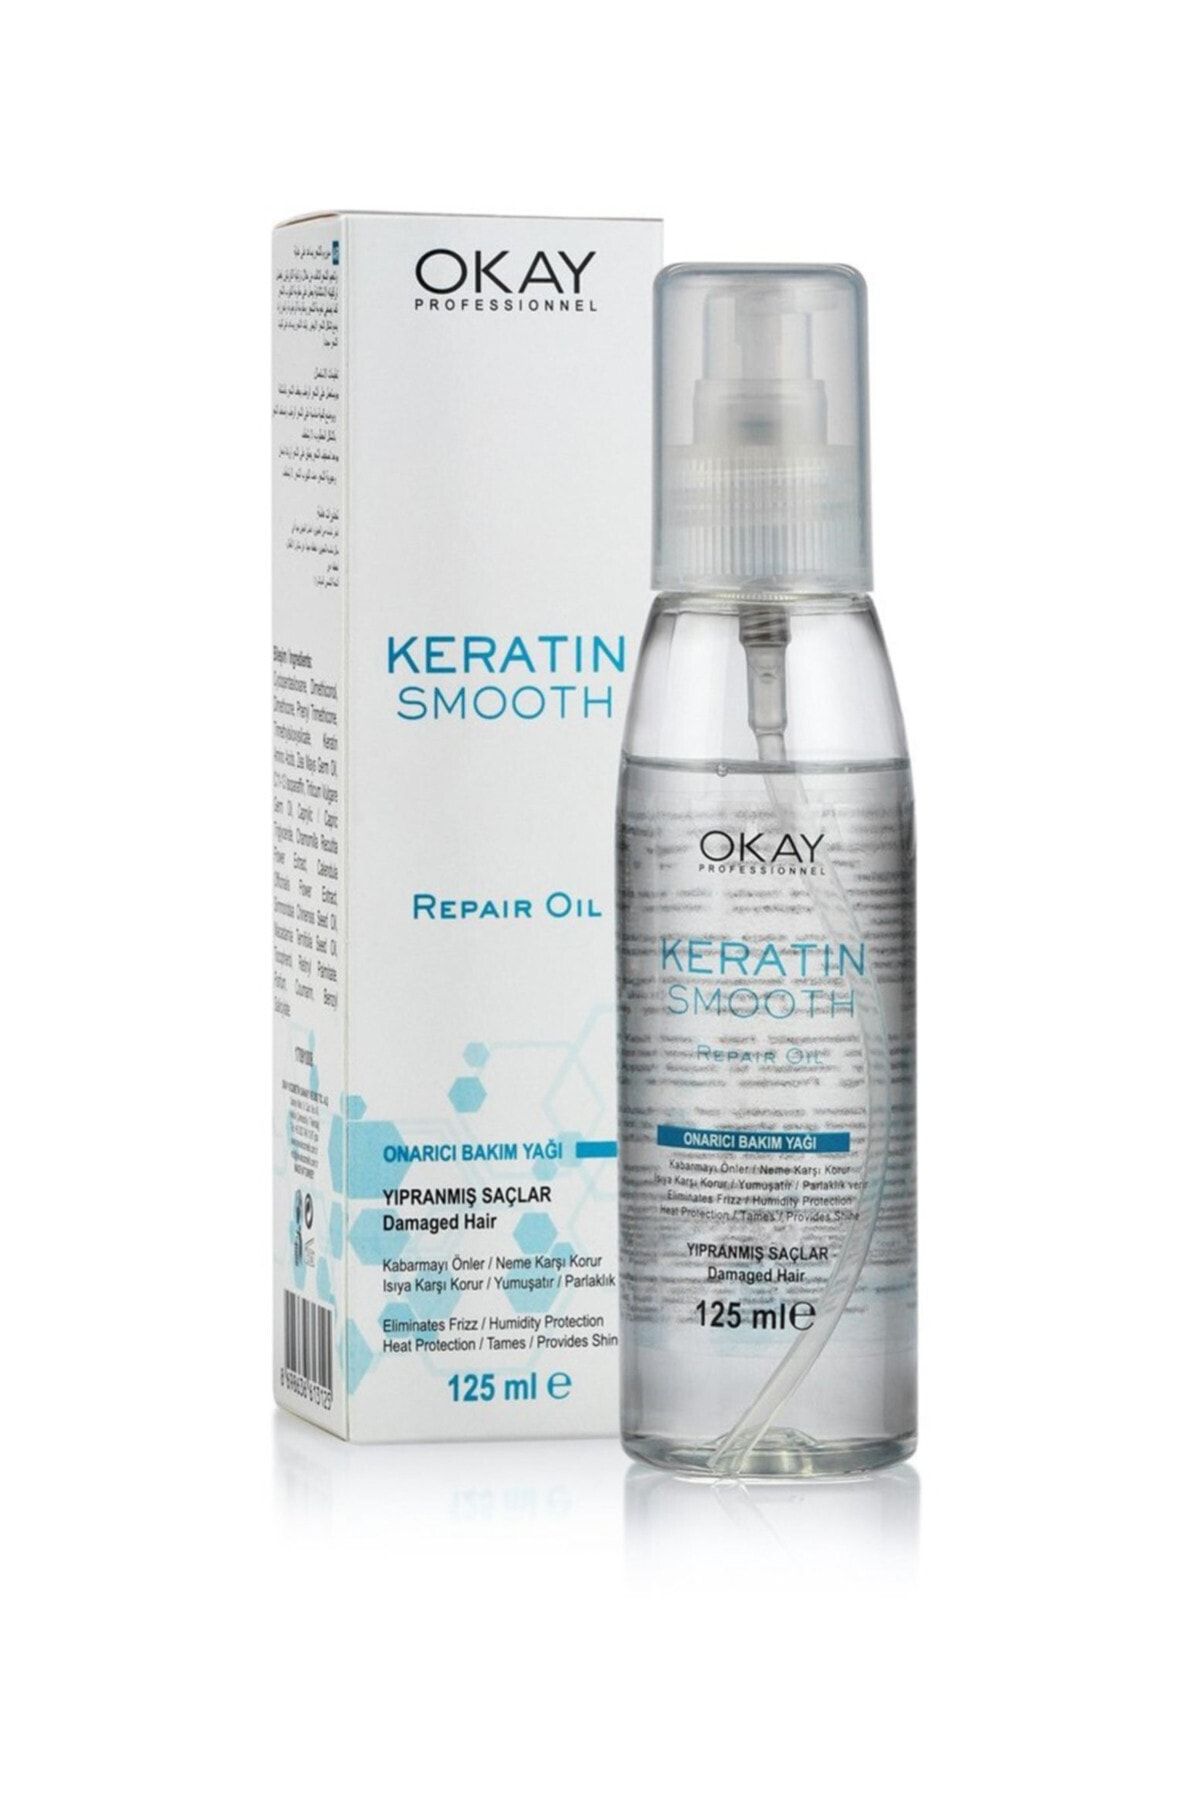 OKAYPROFESSIONNEL Saç Bakım Yağı Keratin Smooth 125 ml